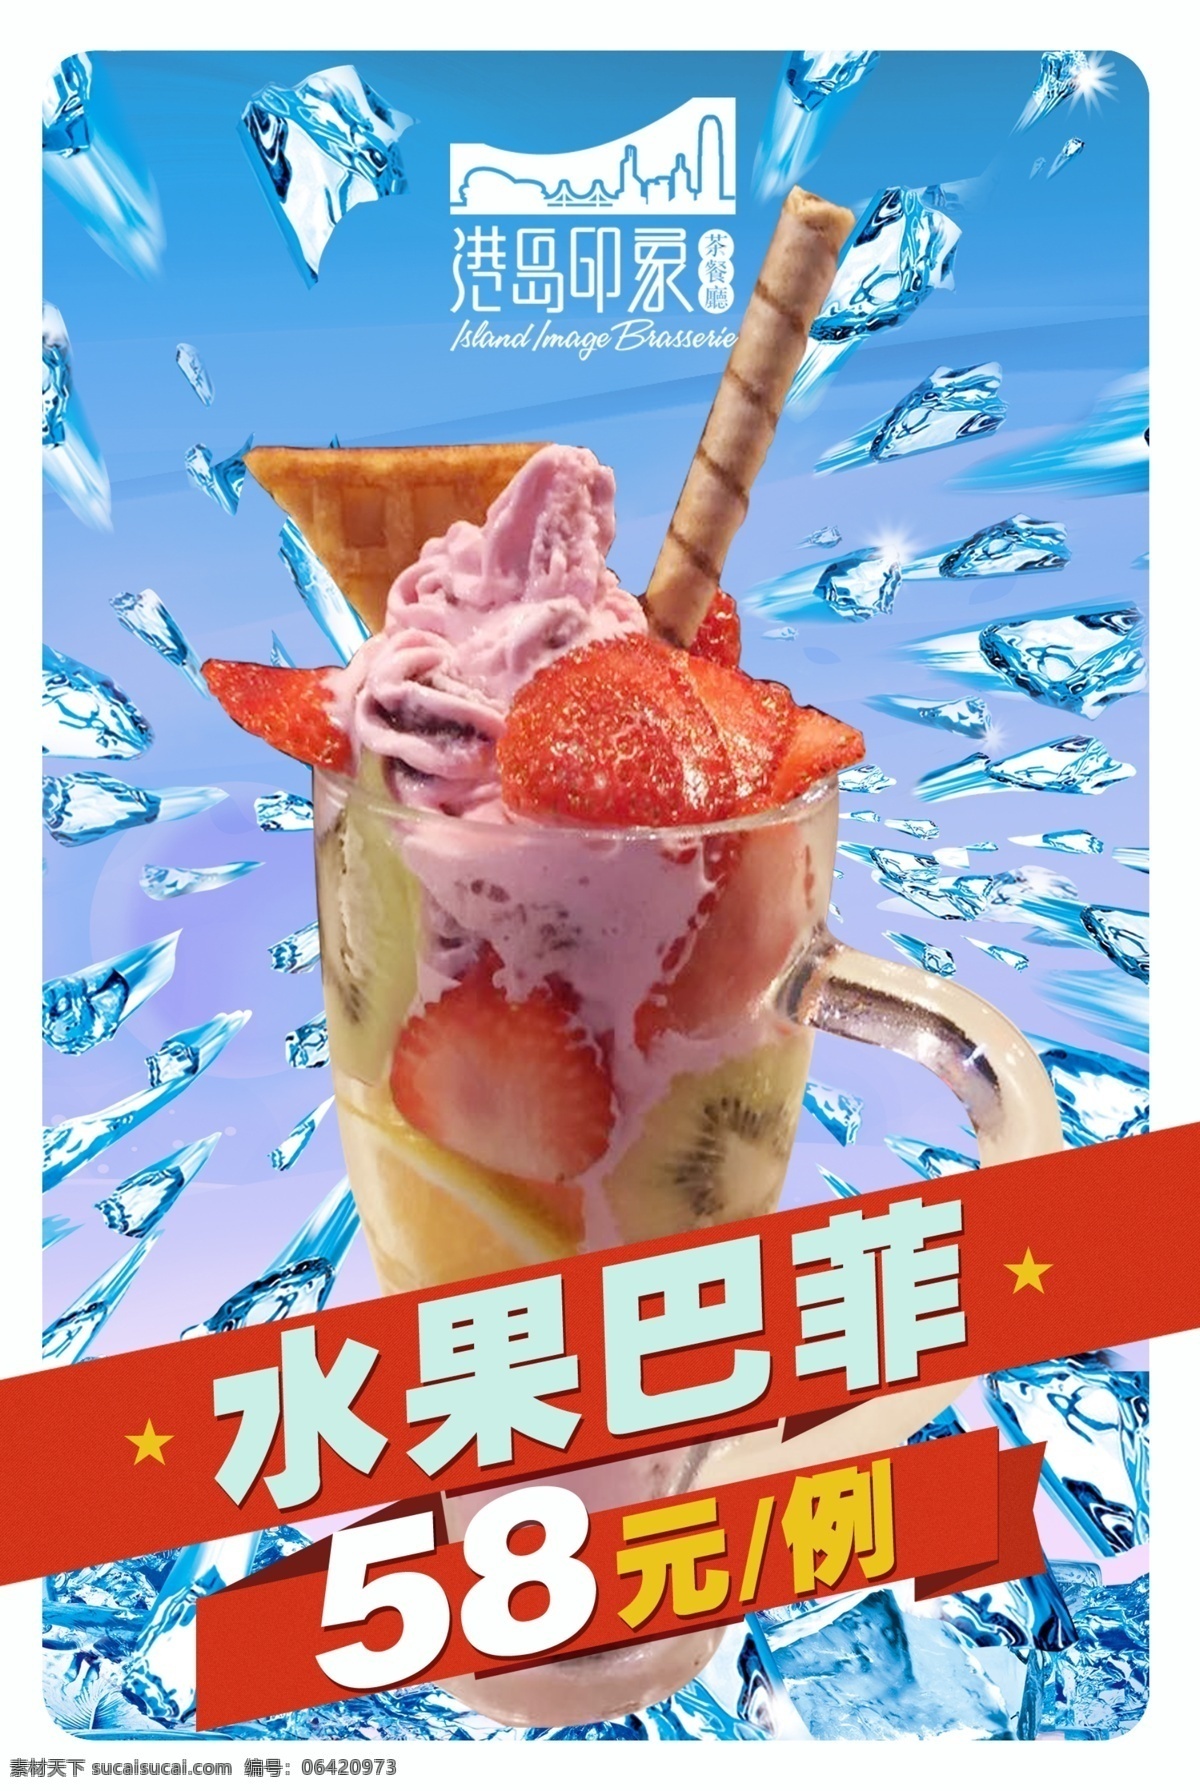 水果 芭 菲 冰淇淋 海报 水果巴菲 冰淇淋海报 冷饮海报 白色